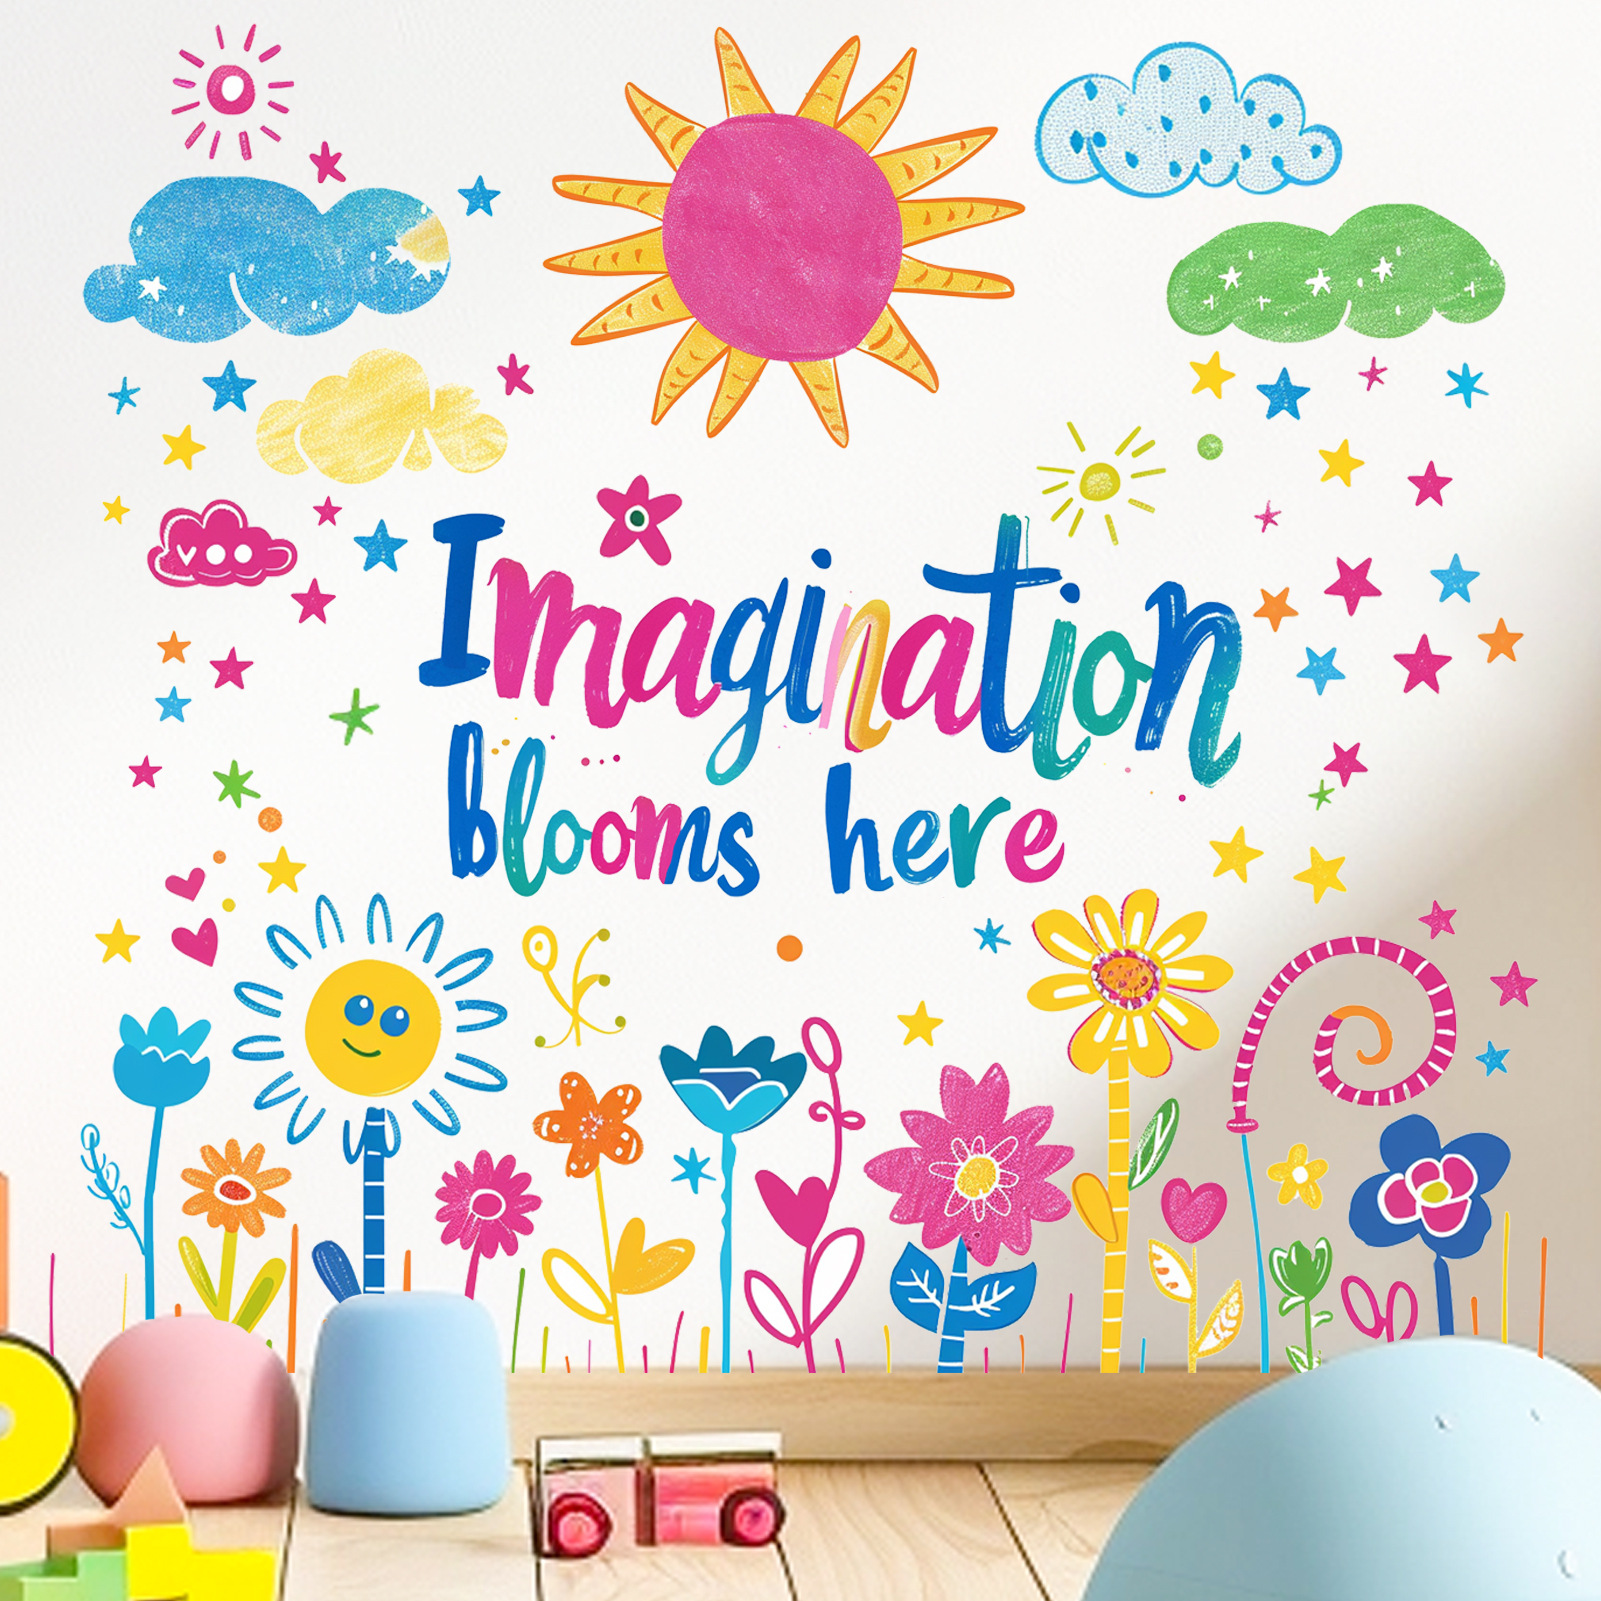 新款MS-GC009开学季手绘彩色英文标语花卉儿童房幼儿园背景墙贴纸